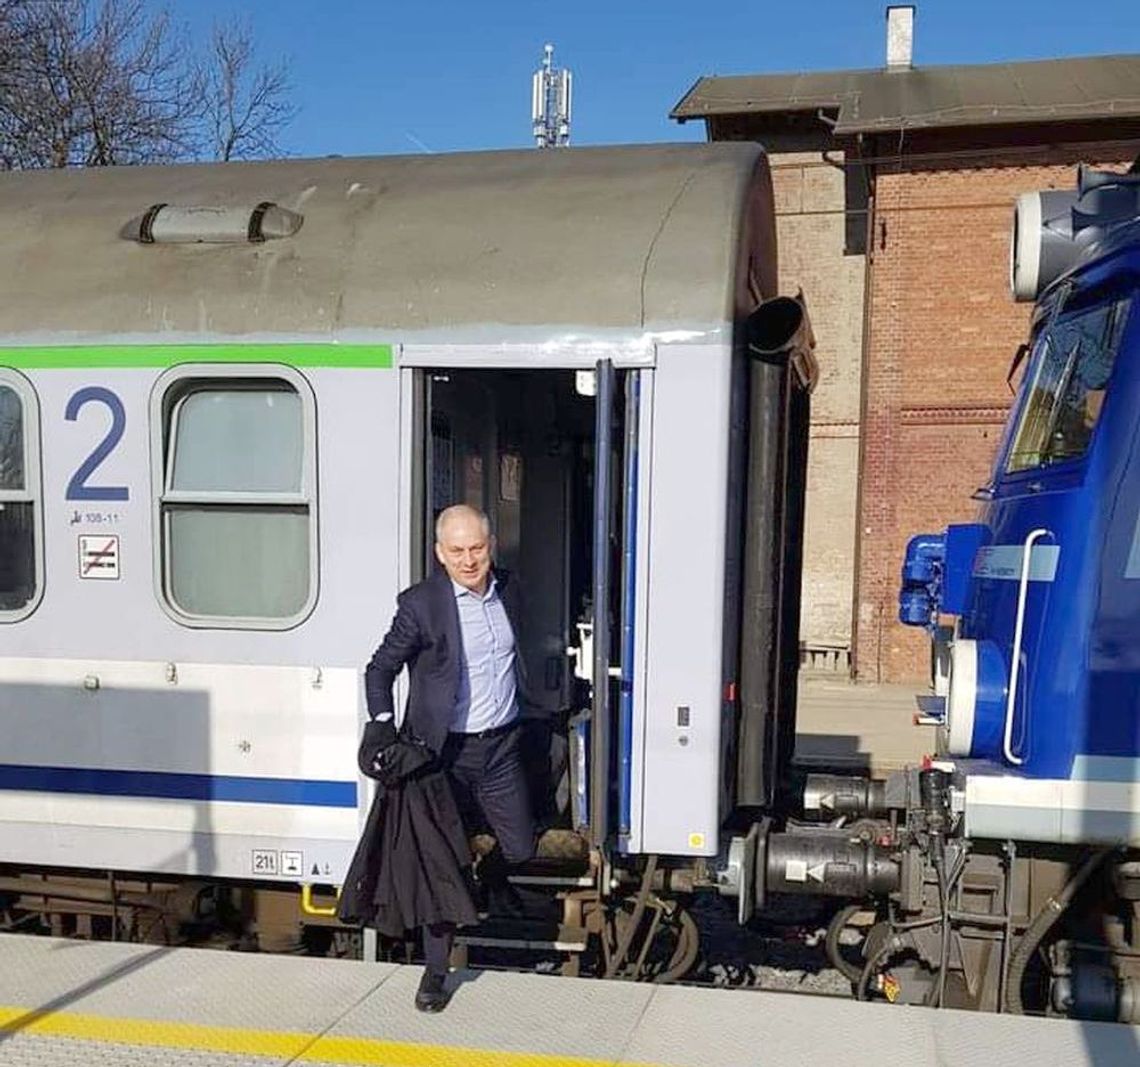 Nowy rozkład jazdy pociągów od 09.06.2019 r. Politycy ze Szczecina zamieszali 